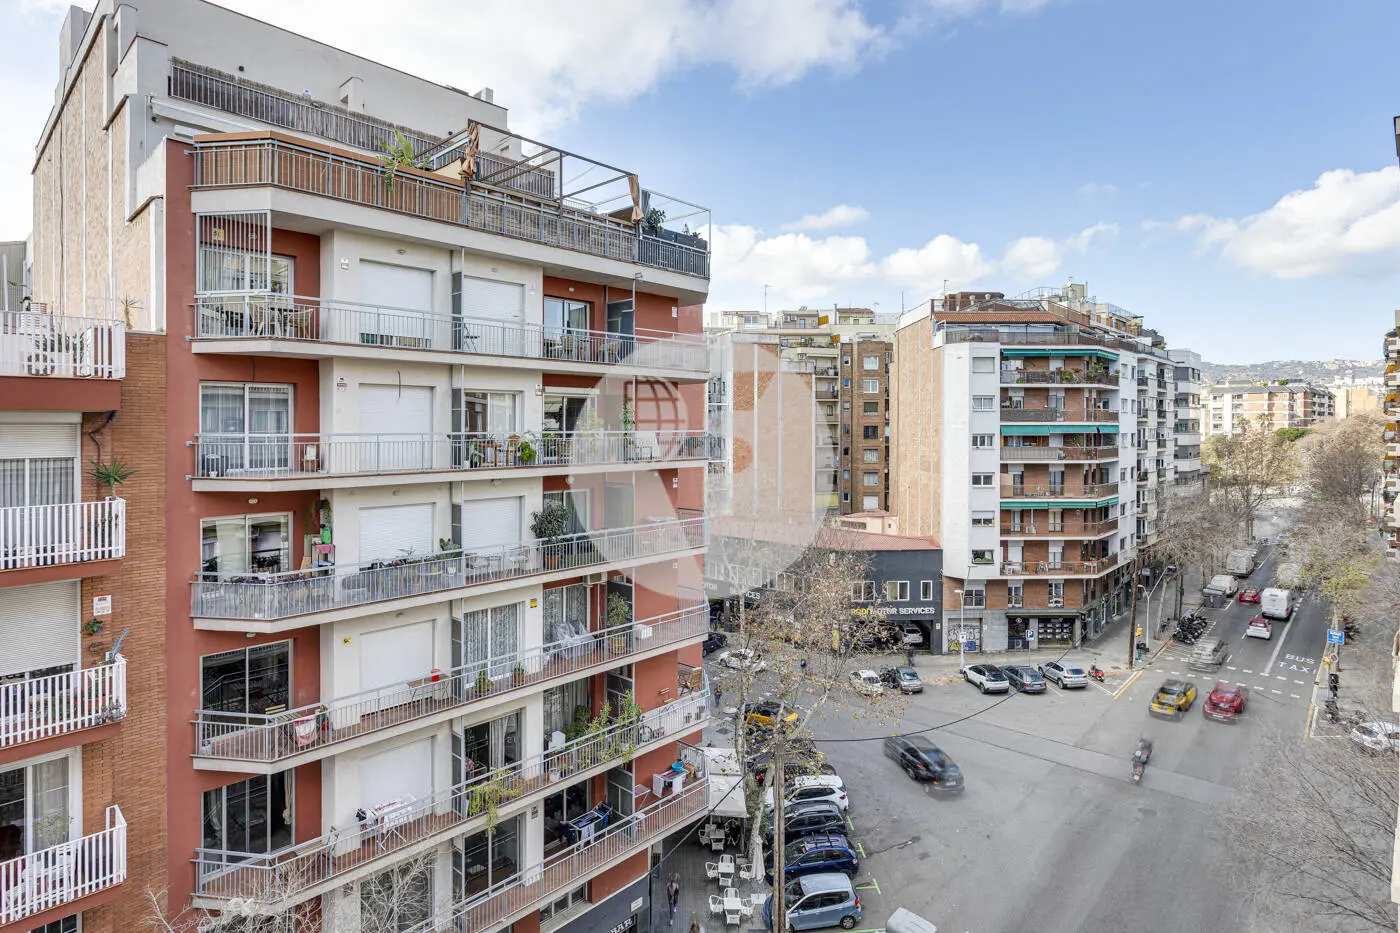 Pis de 3 habitacions ubicat al barri de la Nova Esquerra de l'Eixample de Barcelona. 8